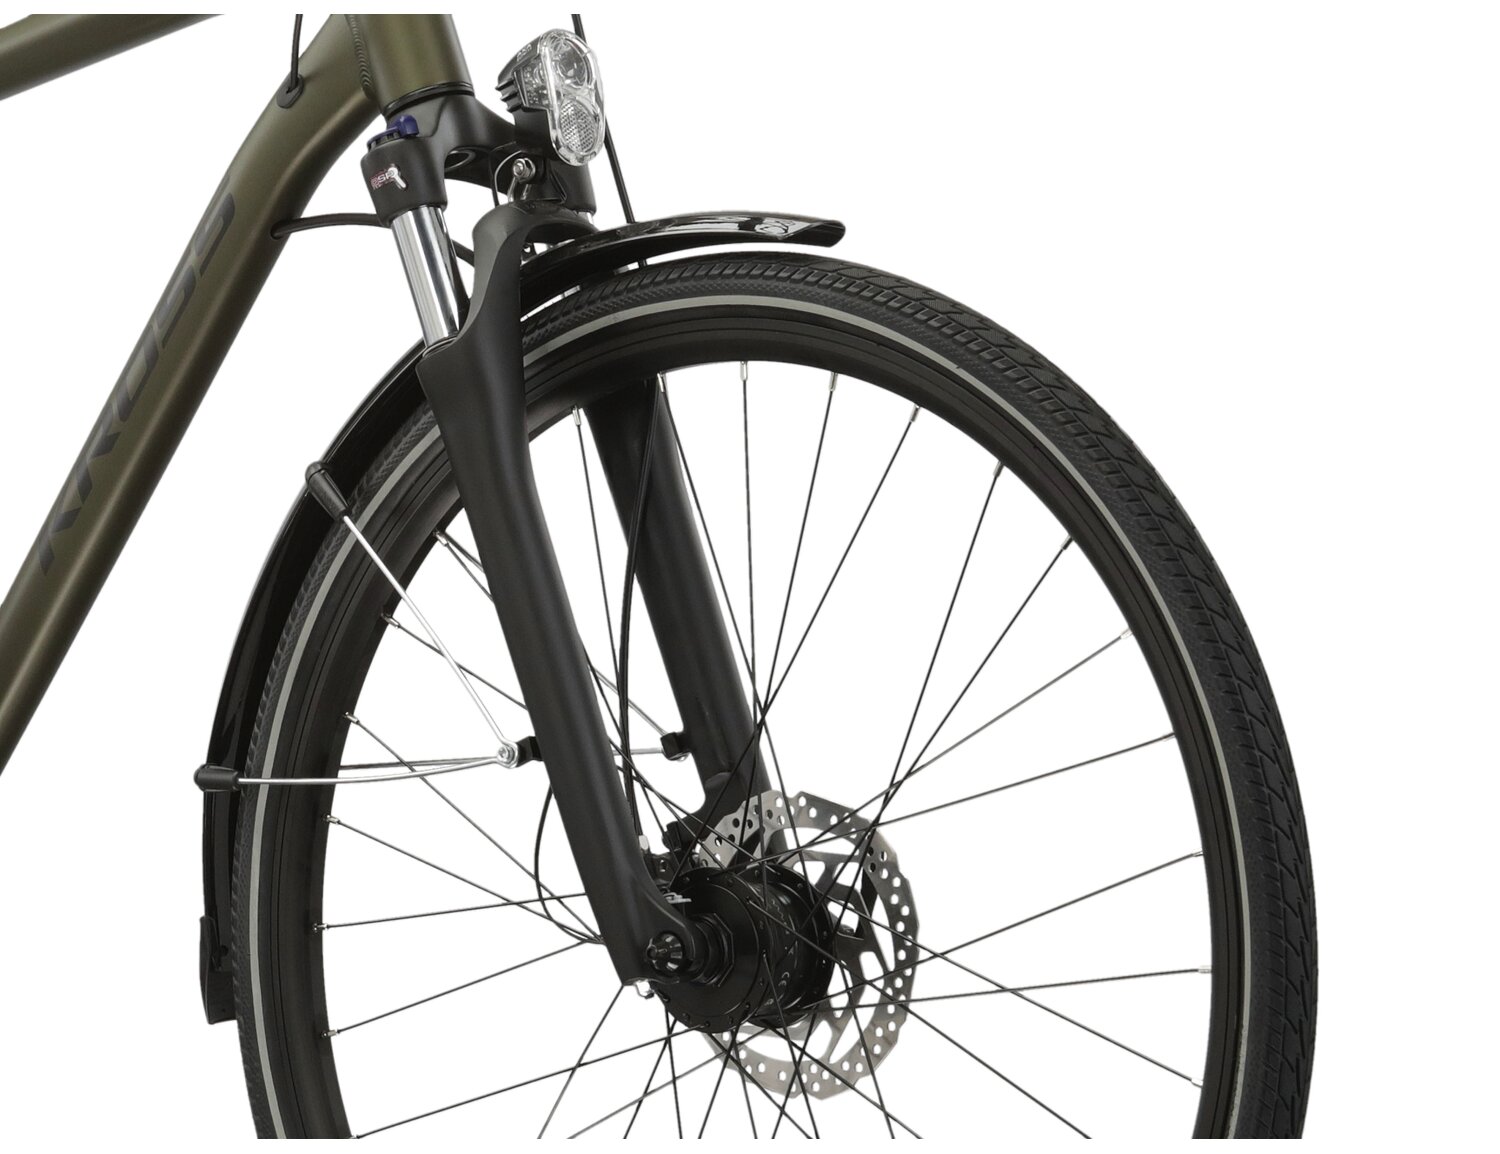 Aluminowa rama, amortyzowany widelec SR SUNTOUR NEX HLO oraz opony Wanda w rowerze trekkingowym KROSS Trans 5.0 